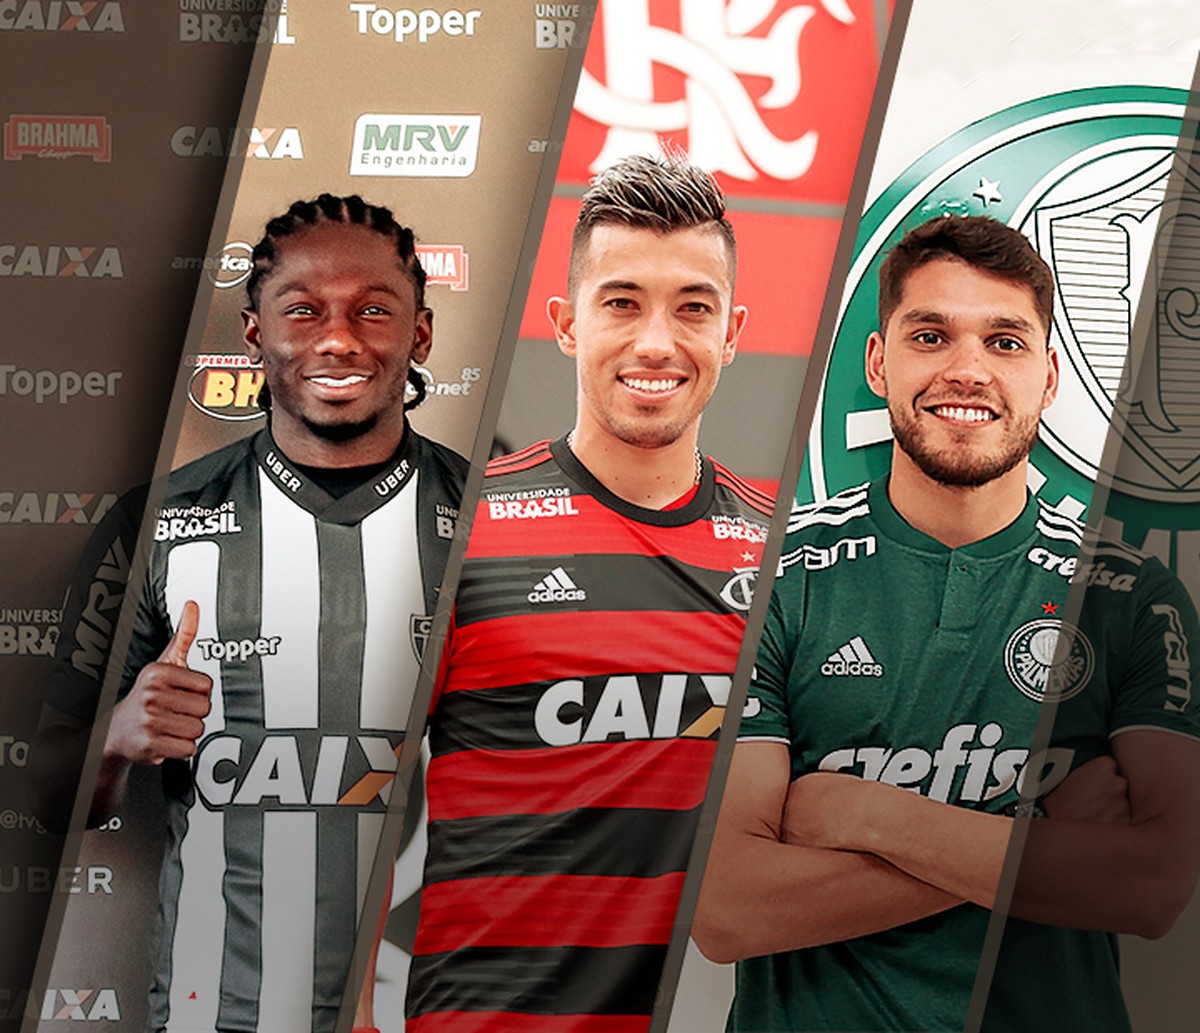 Após pausa da Copa do Mundo, Palmeiras volta a campo pelo Paulistão Feminino